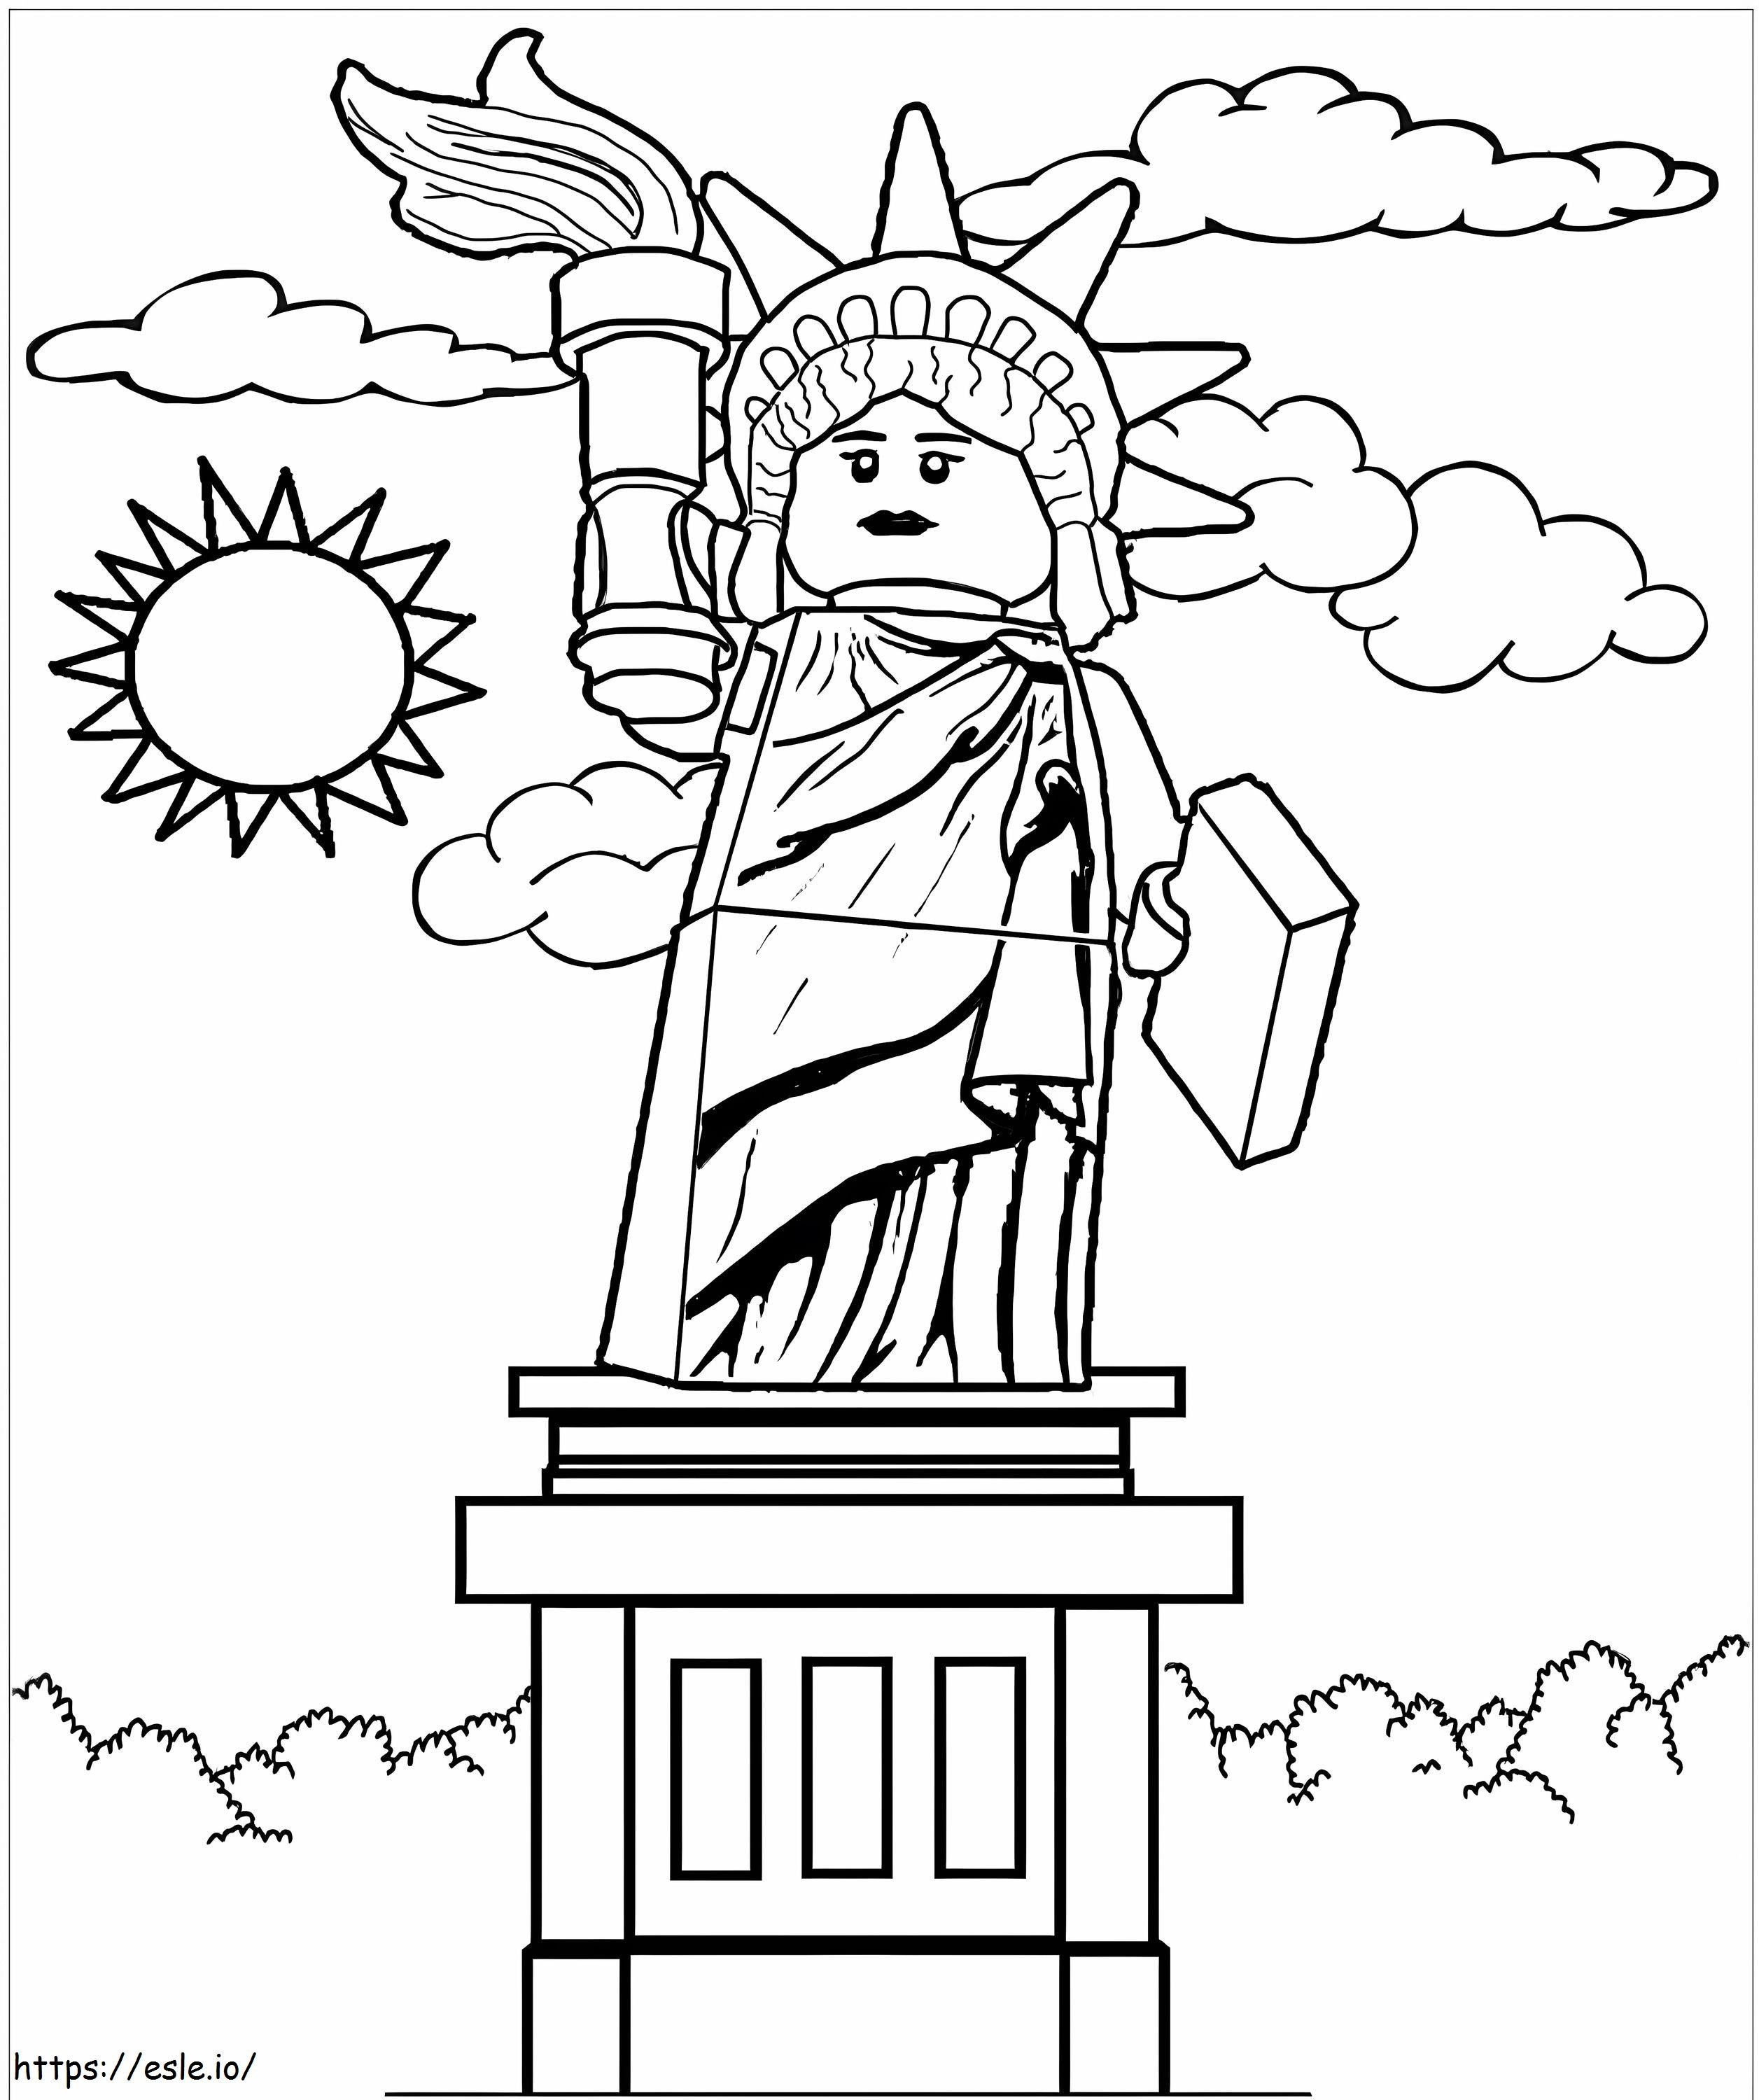 Statua Wolności Lego City kolorowanka